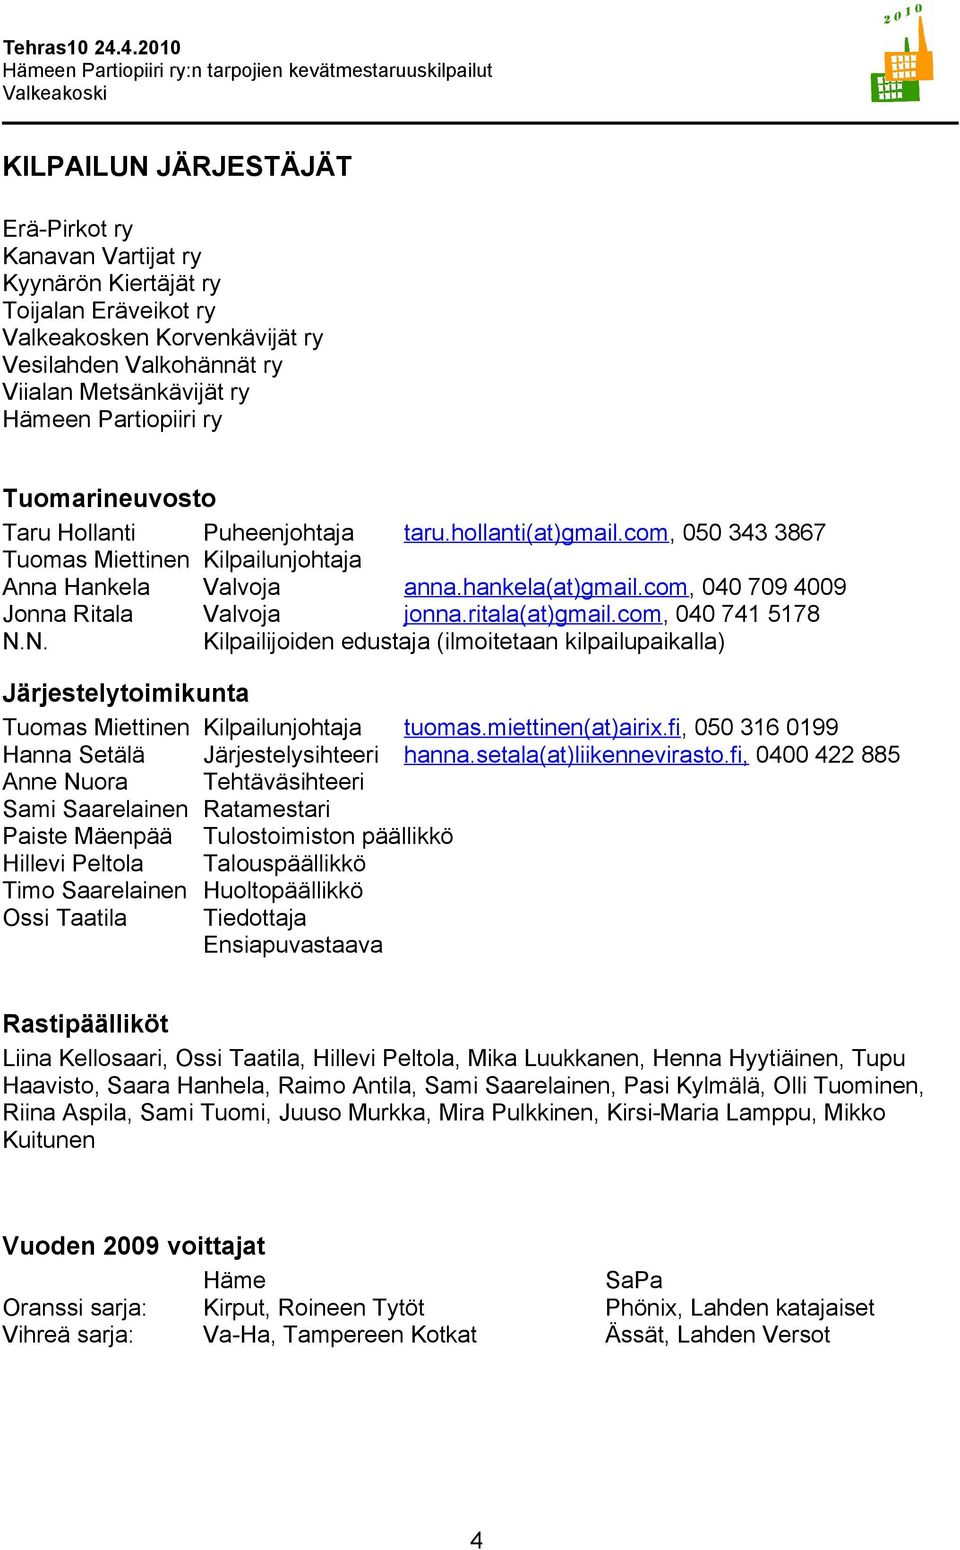 com, 040 709 4009 Jonna Ritala Valvoja jonna.ritala(at)gmail.com, 040 741 5178 N.N. Kilpailijoiden edustaja (ilmoitetaan kilpailupaikalla) Järjestelytoimikunta Tuomas Miettinen Kilpailunjohtaja tuomas.